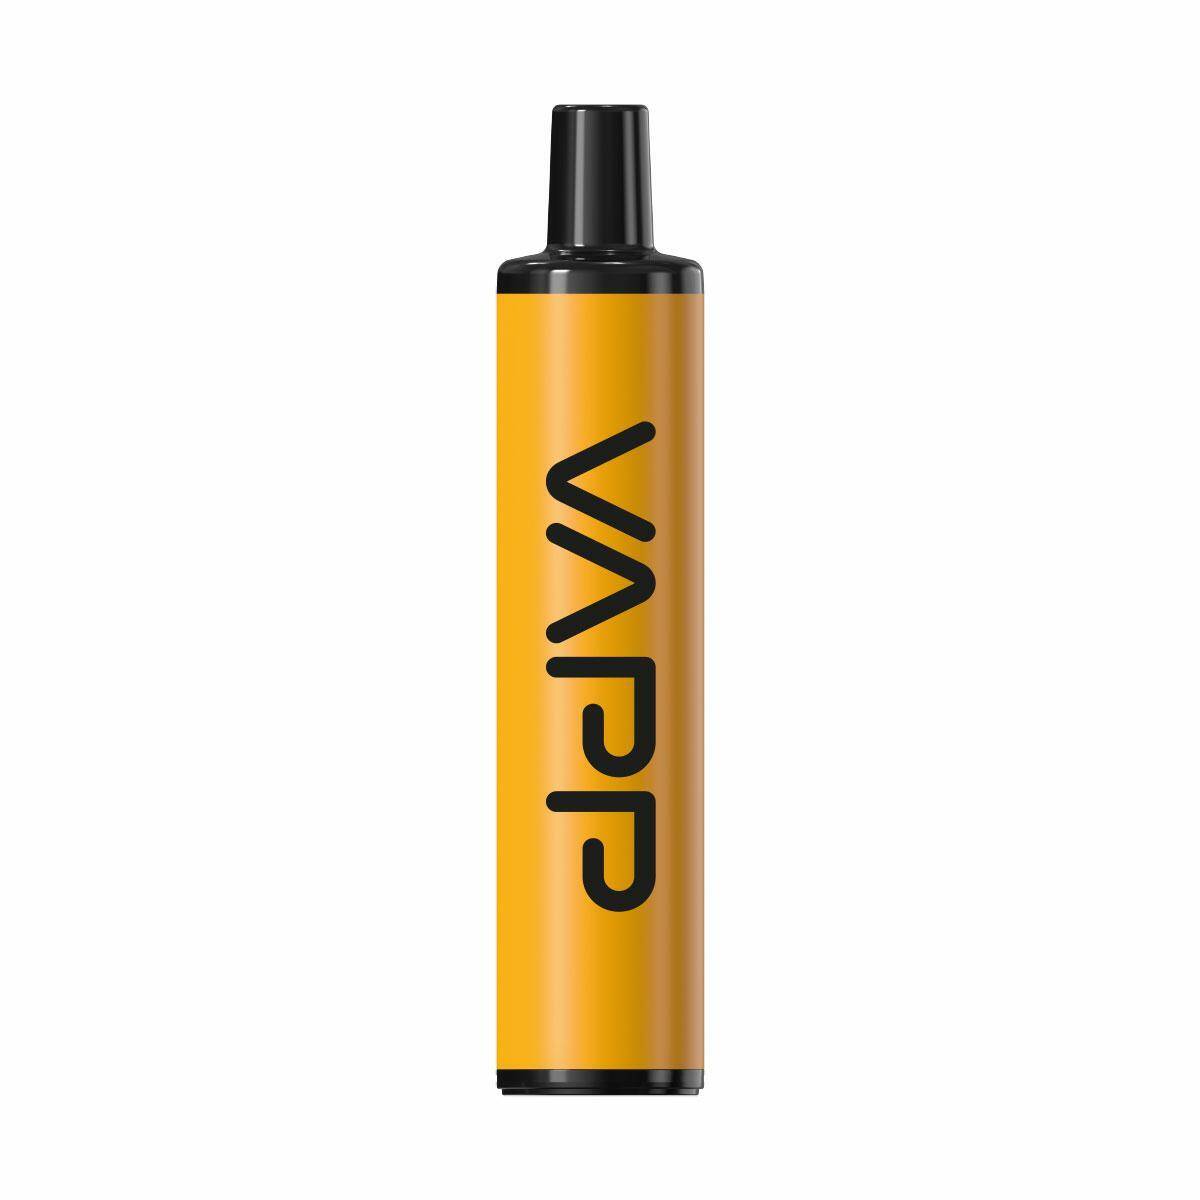 Disposable e-cigarette VIVO VAPP - Mango Apple Pear 20mg